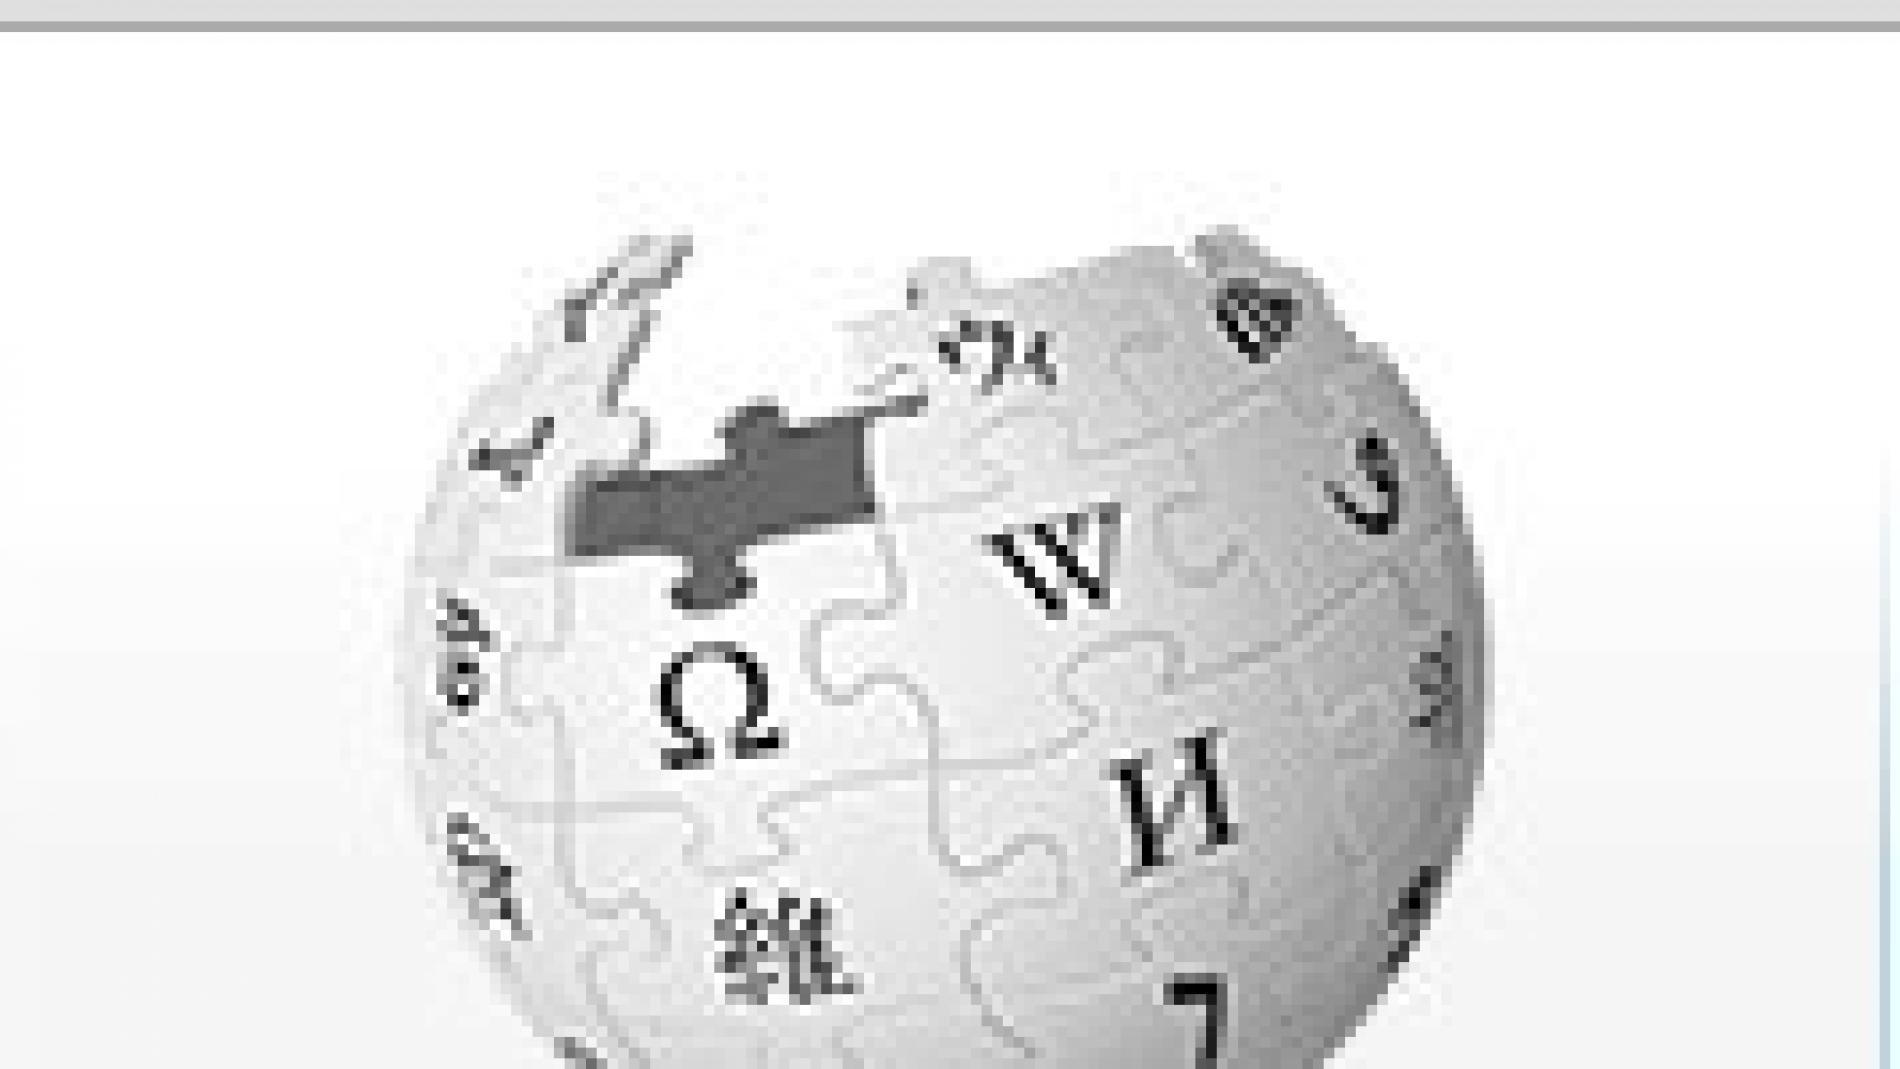 Bola de cristal - Wikipedia, la enciclopedia libre